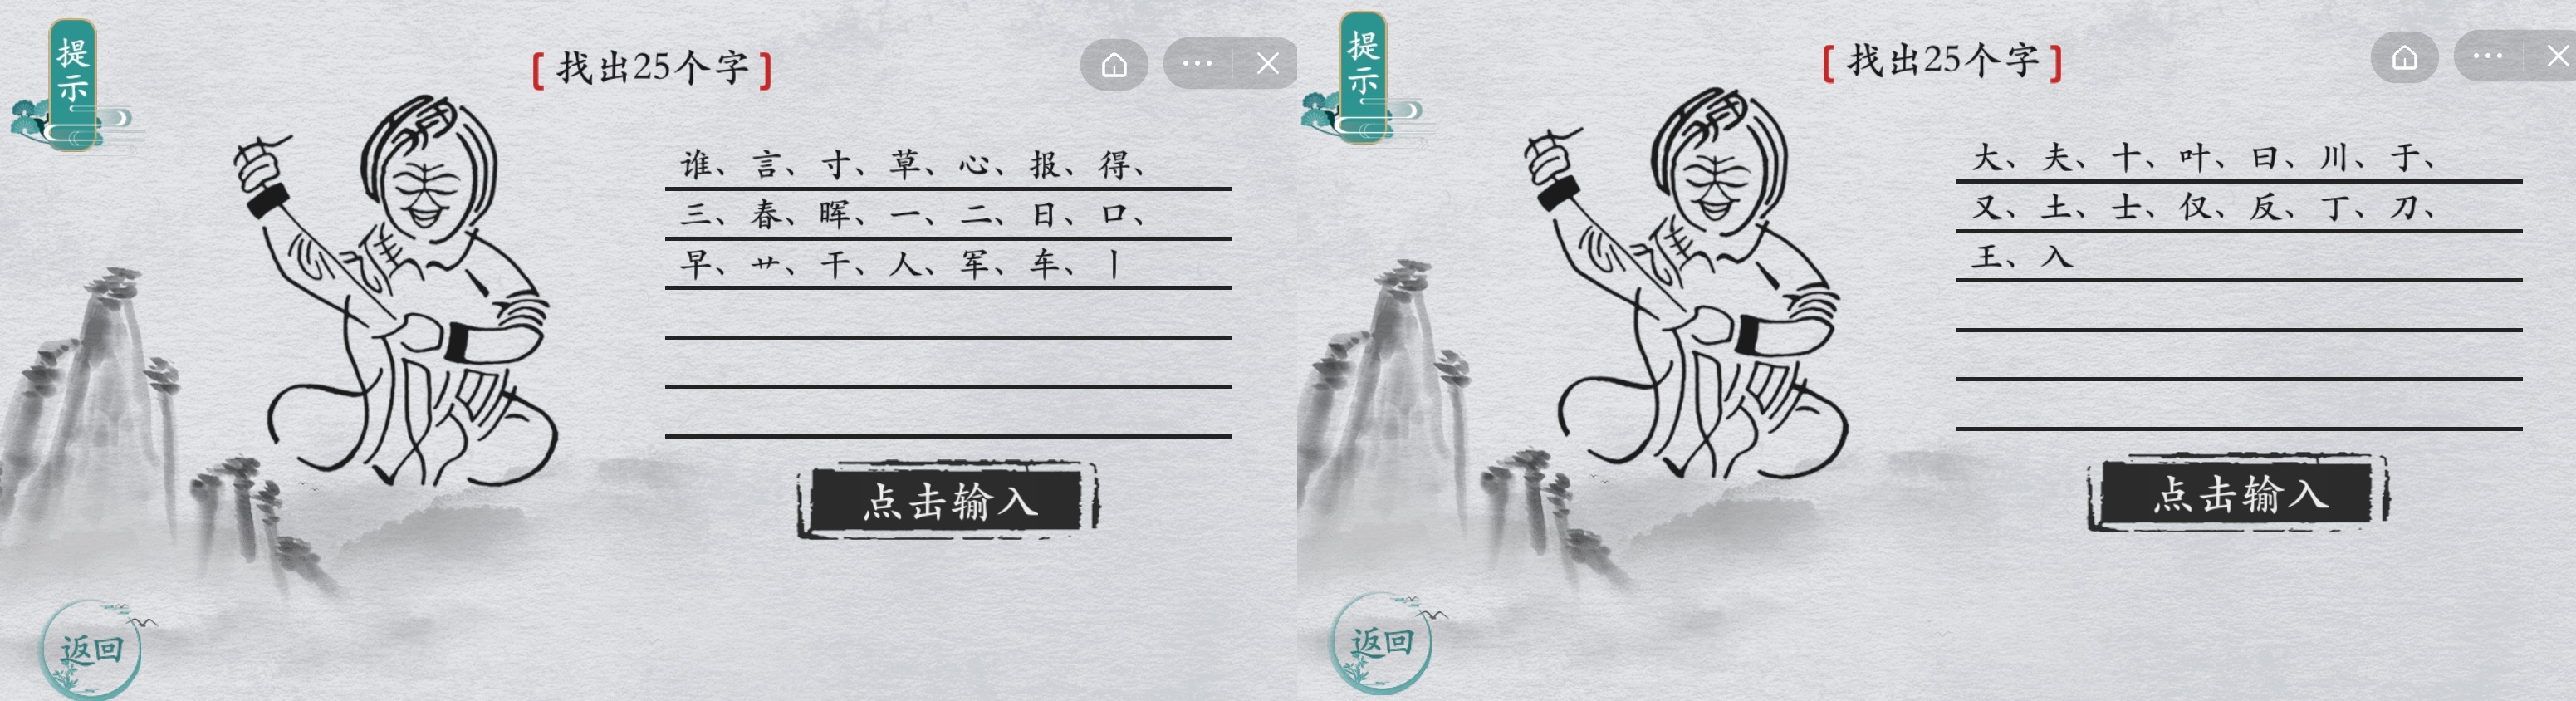 离谱的汉字画中字老奶奶攻略 离谱找字第11关攻略